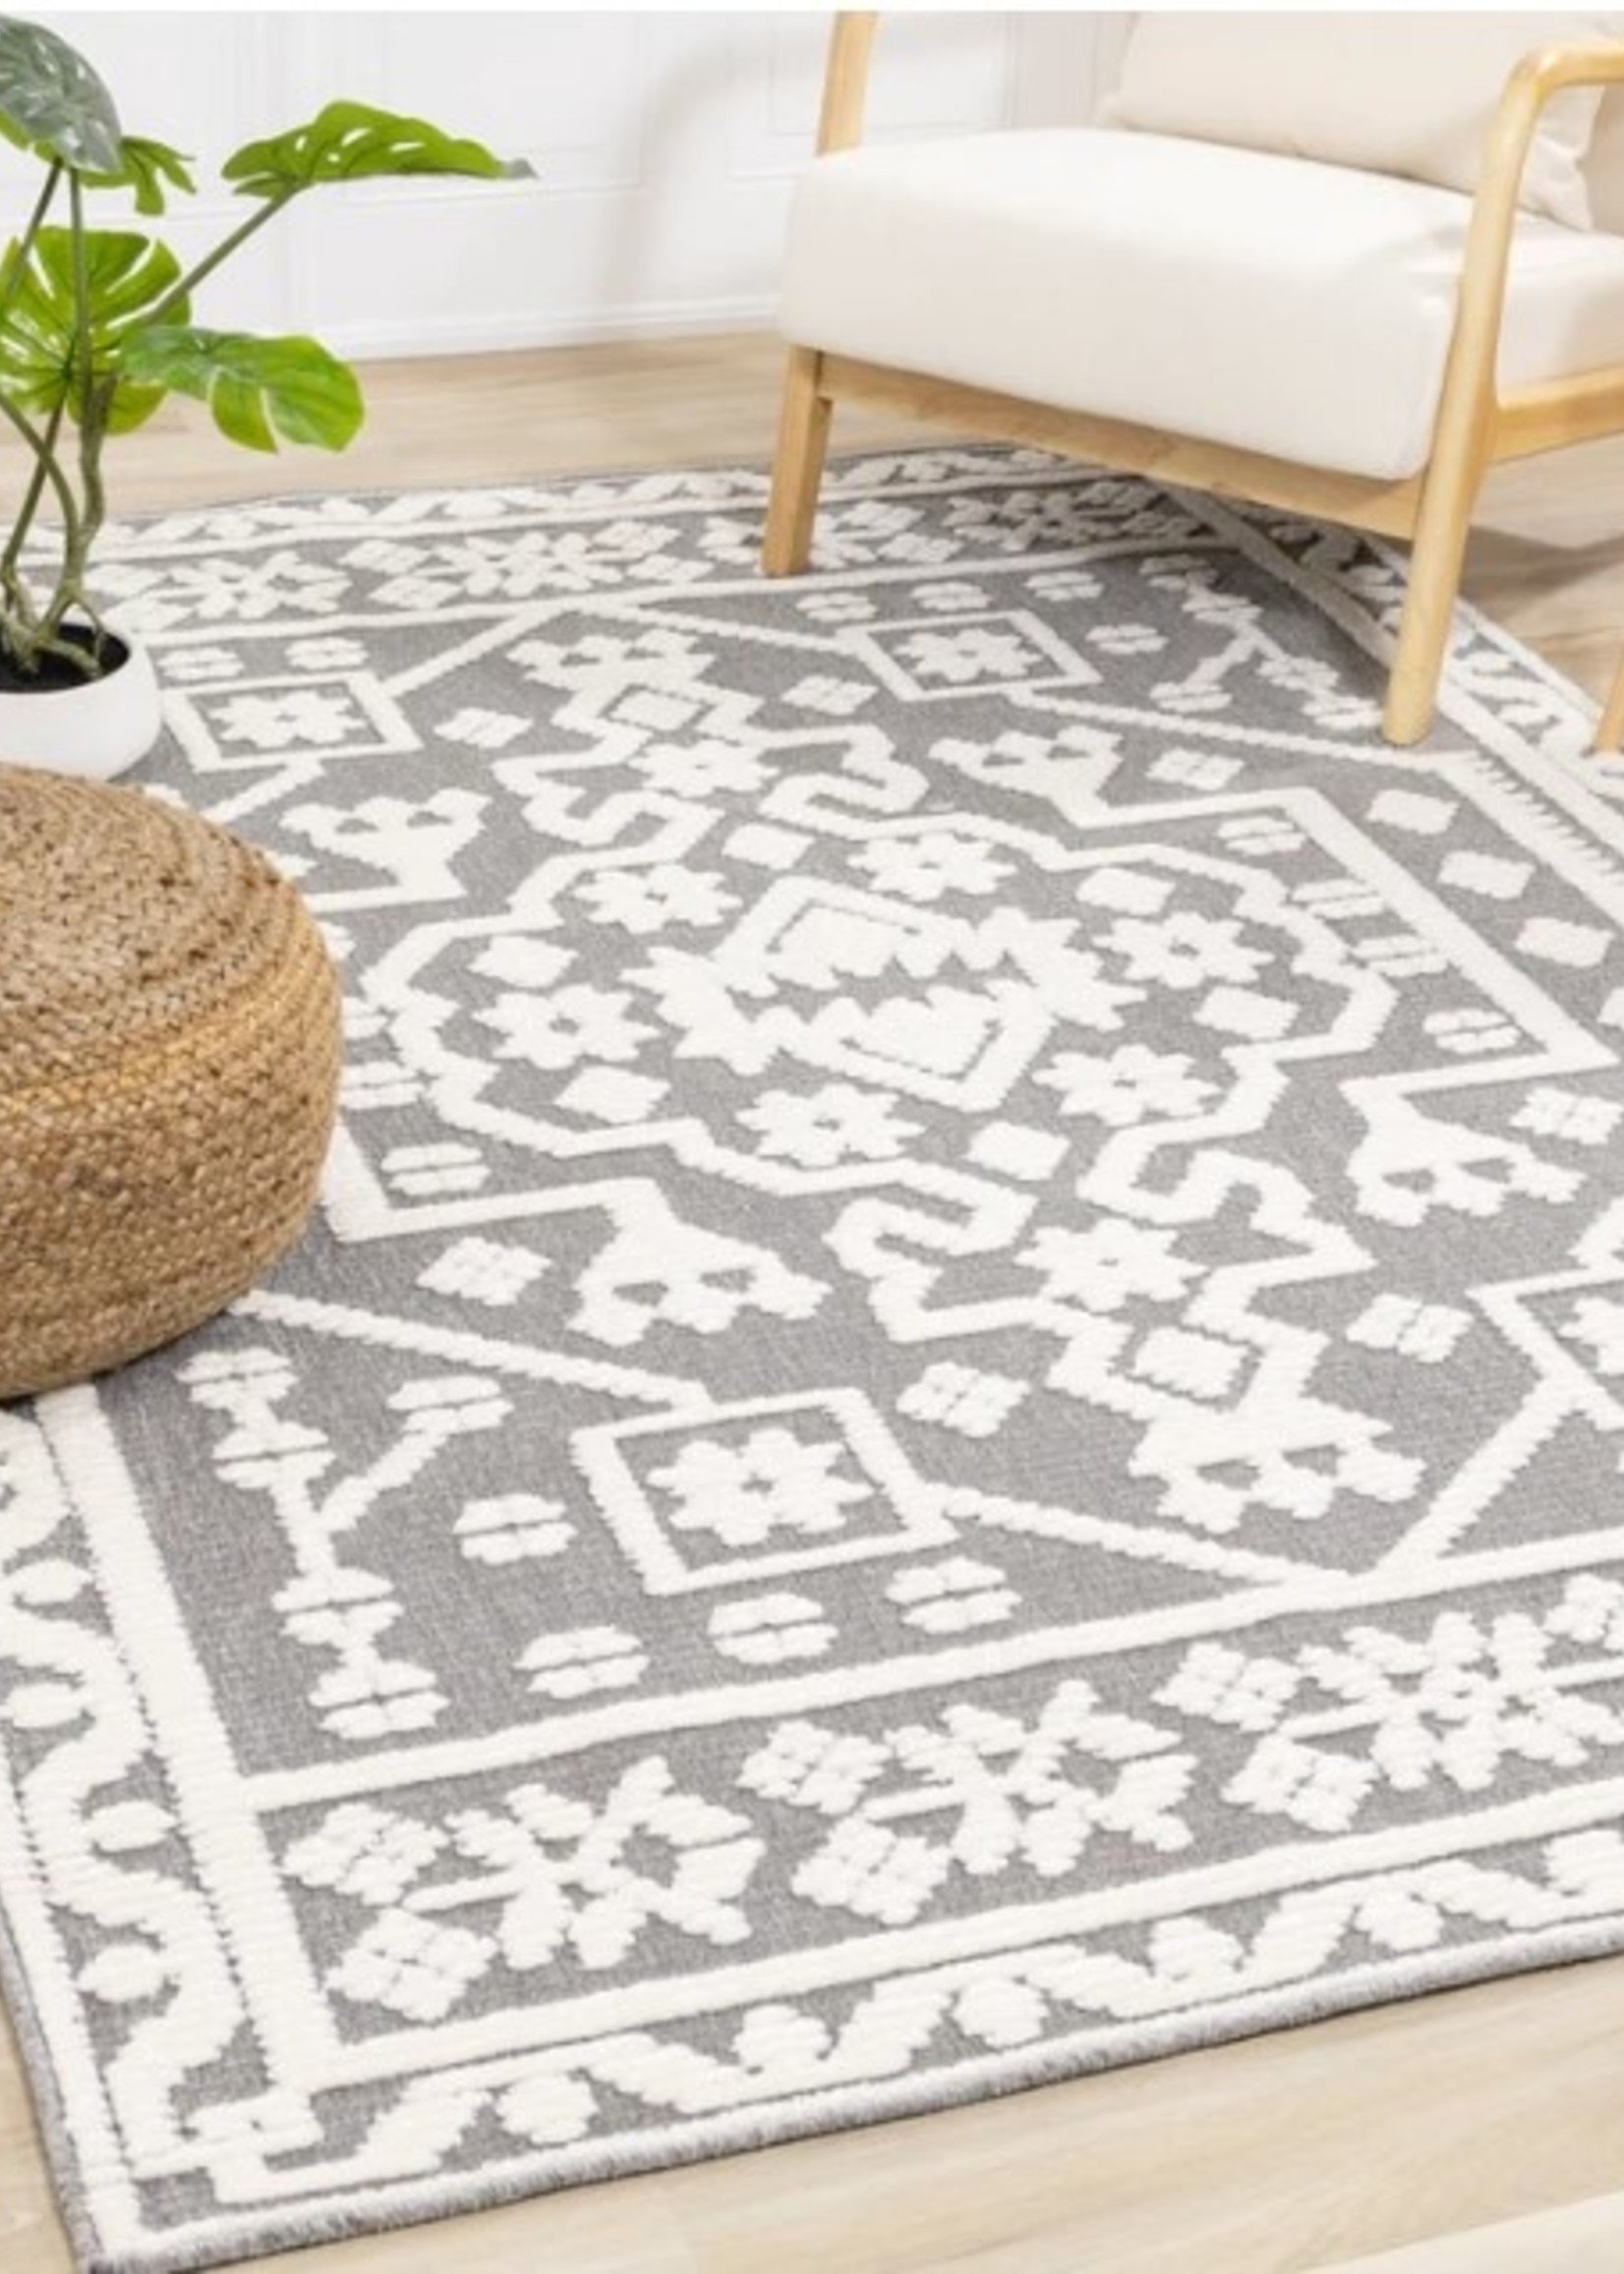 Kalora Lawson Area Carpet * Grey & Cream * 5'-3"x7'-2" * Also Available 8'x10'